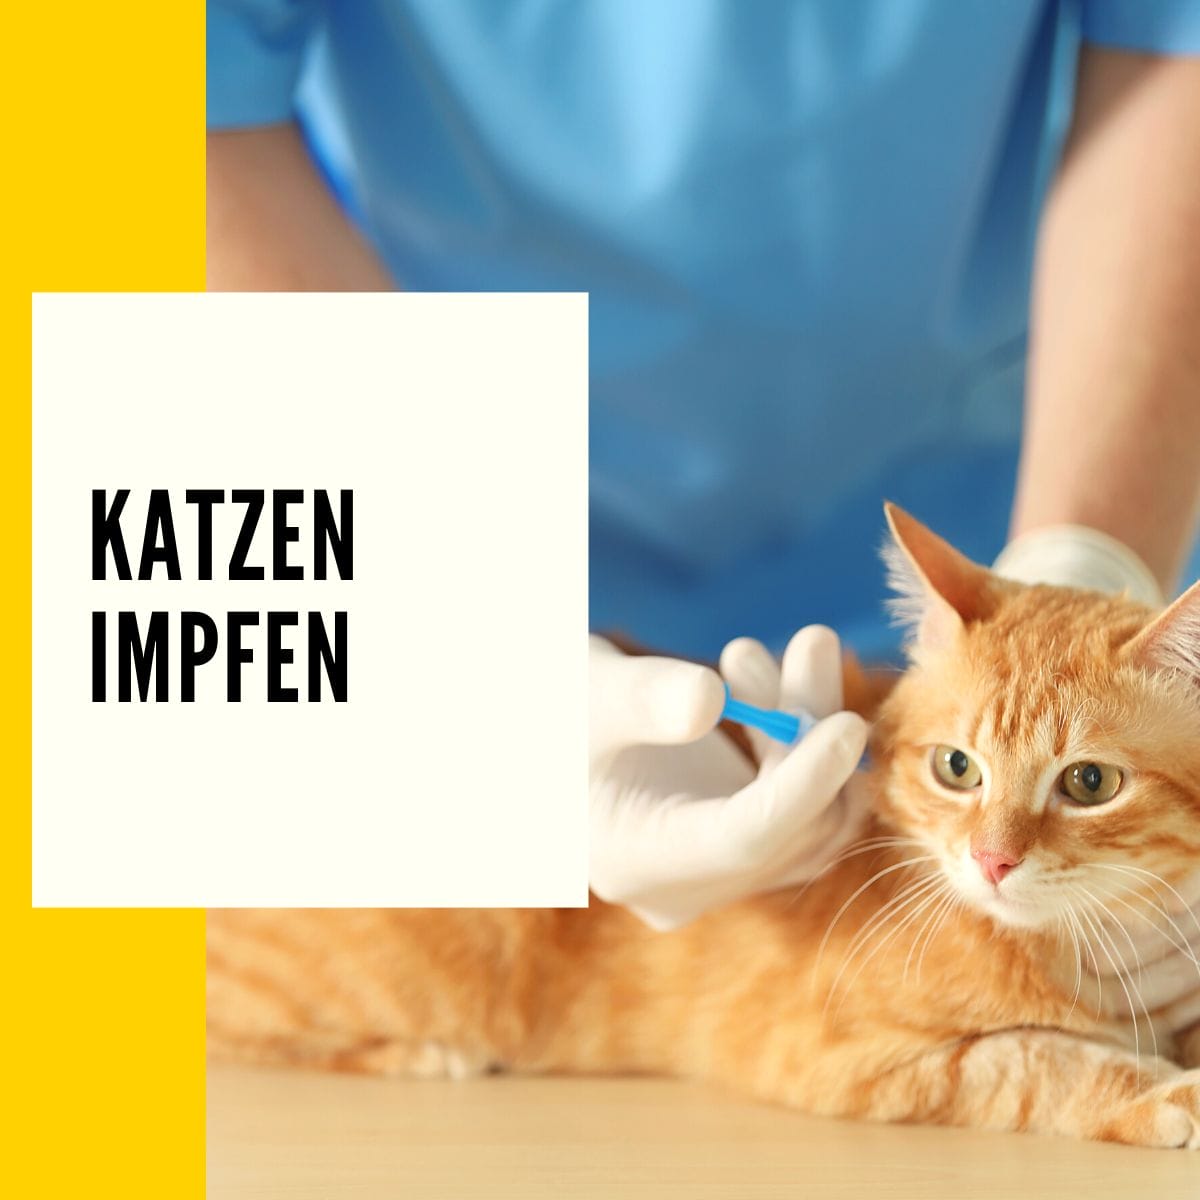 Katzen impfen: In diesem Beitrag geht es um das impfen deiner Katze und dem Schutz vor Krankheitserregern.